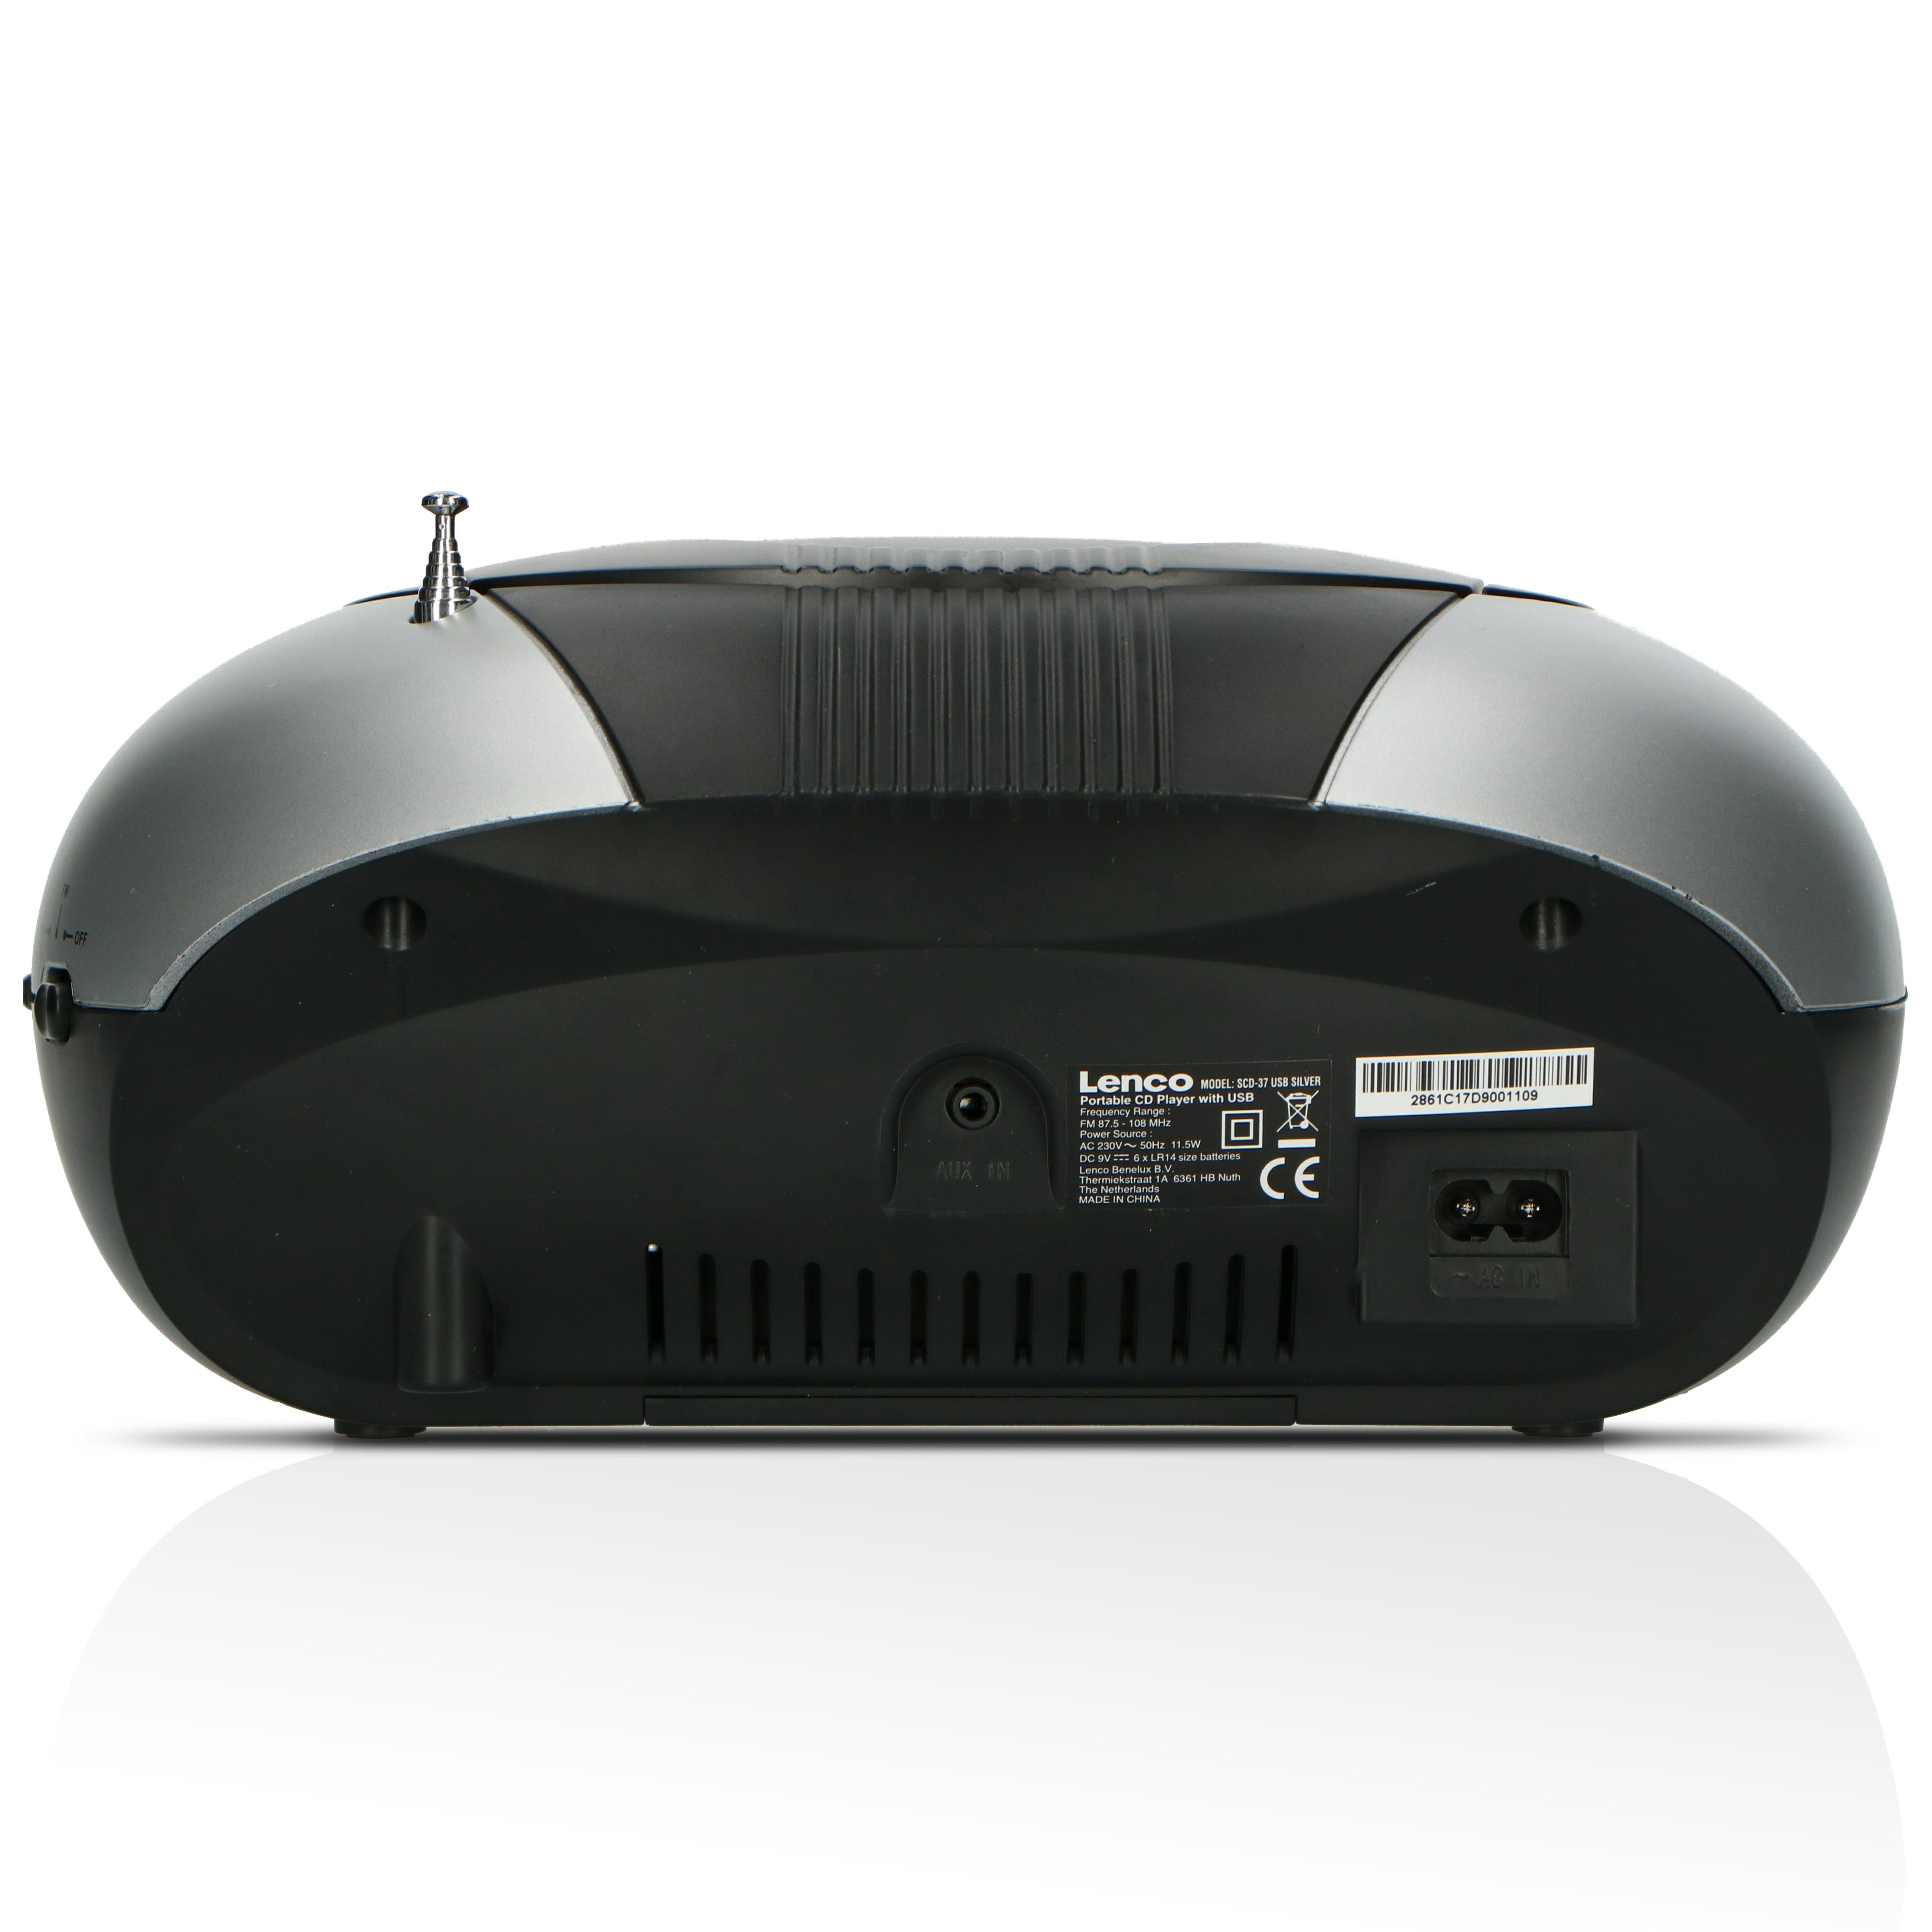 (FM) Schwarz-Grau Lenco USB CD-Radiorecorder SCD-37 Silver